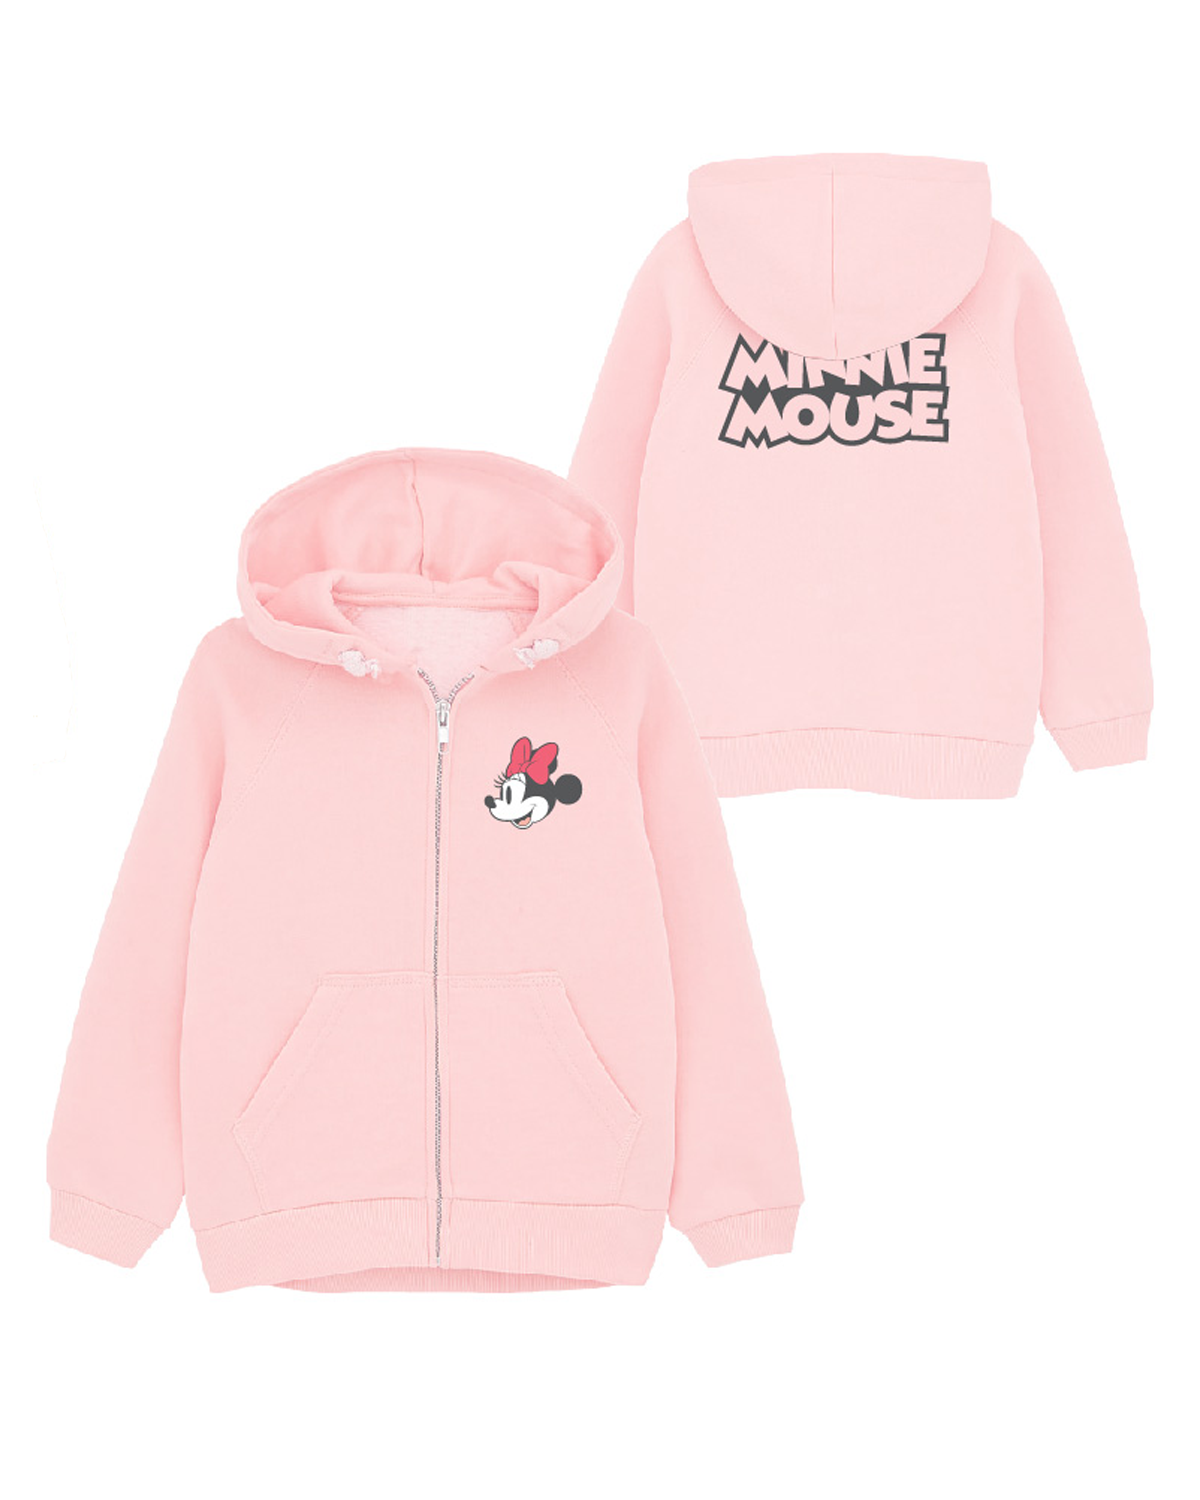 Minnie Mouse - licence Dívčí mikina - Minnie Mouse 52187834, světle růžová Barva: Růžová, Velikost: 110